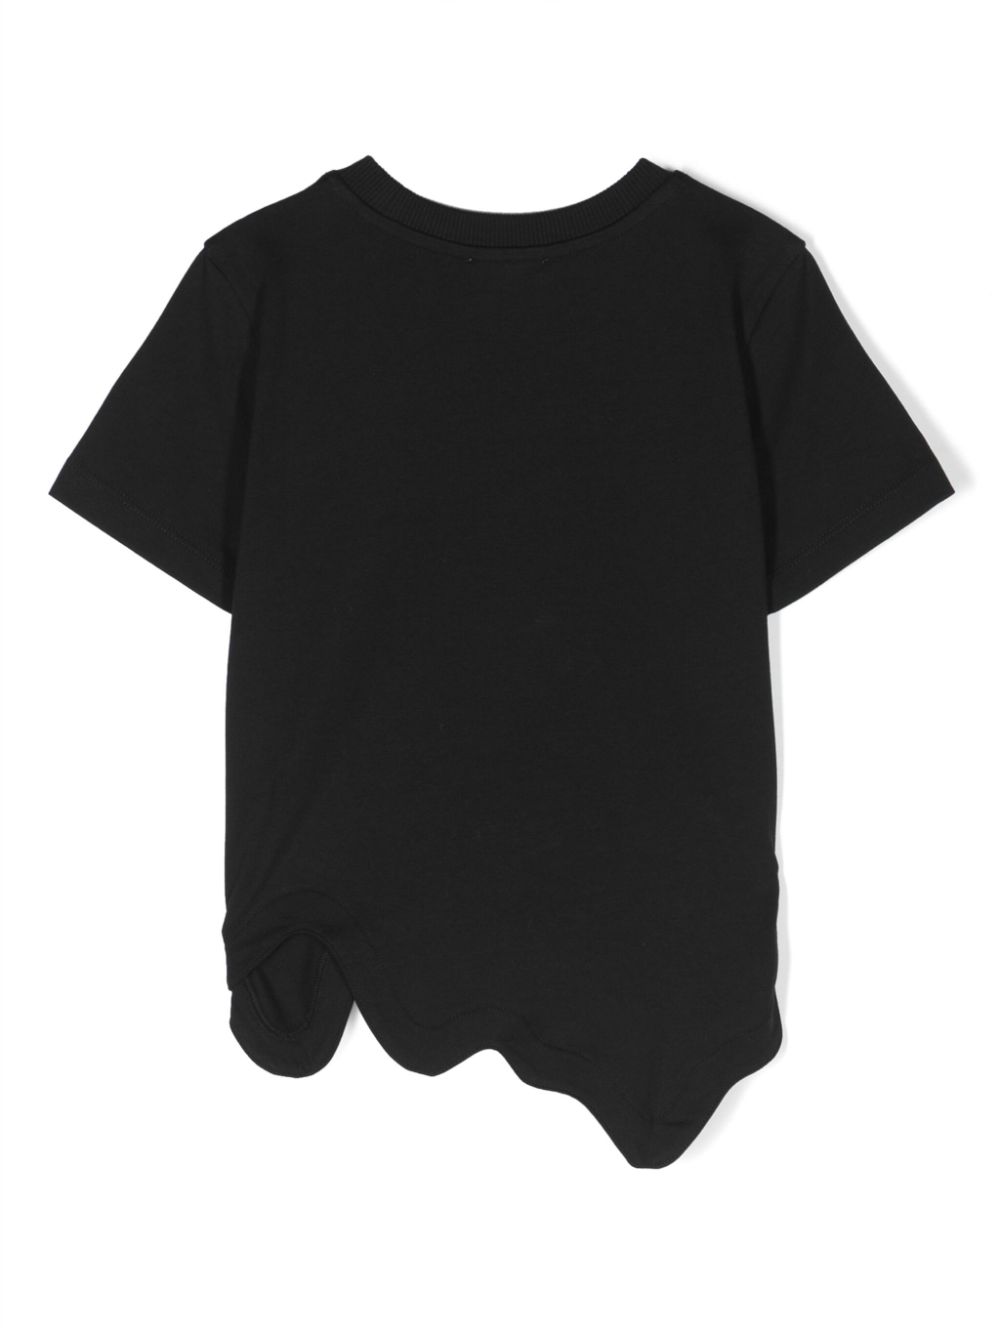 T-shirt fille noir avec imprimé